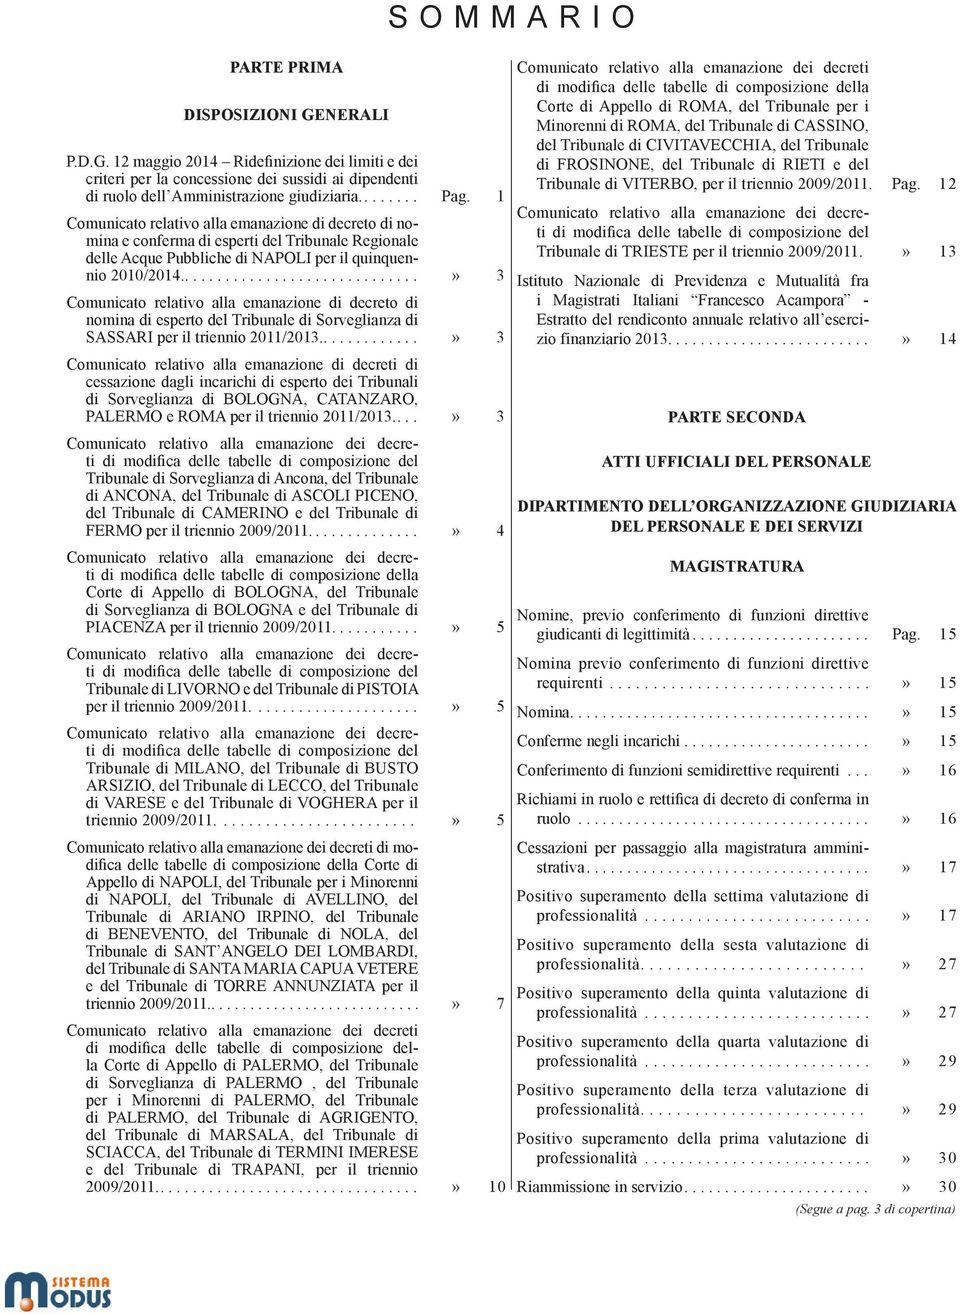 ....» 3 Comunicato relativo alla emanazione di decreto di nomina di esperto del Tribunale di Sorveglianza di SASSARI per il triennio 2011/2013.